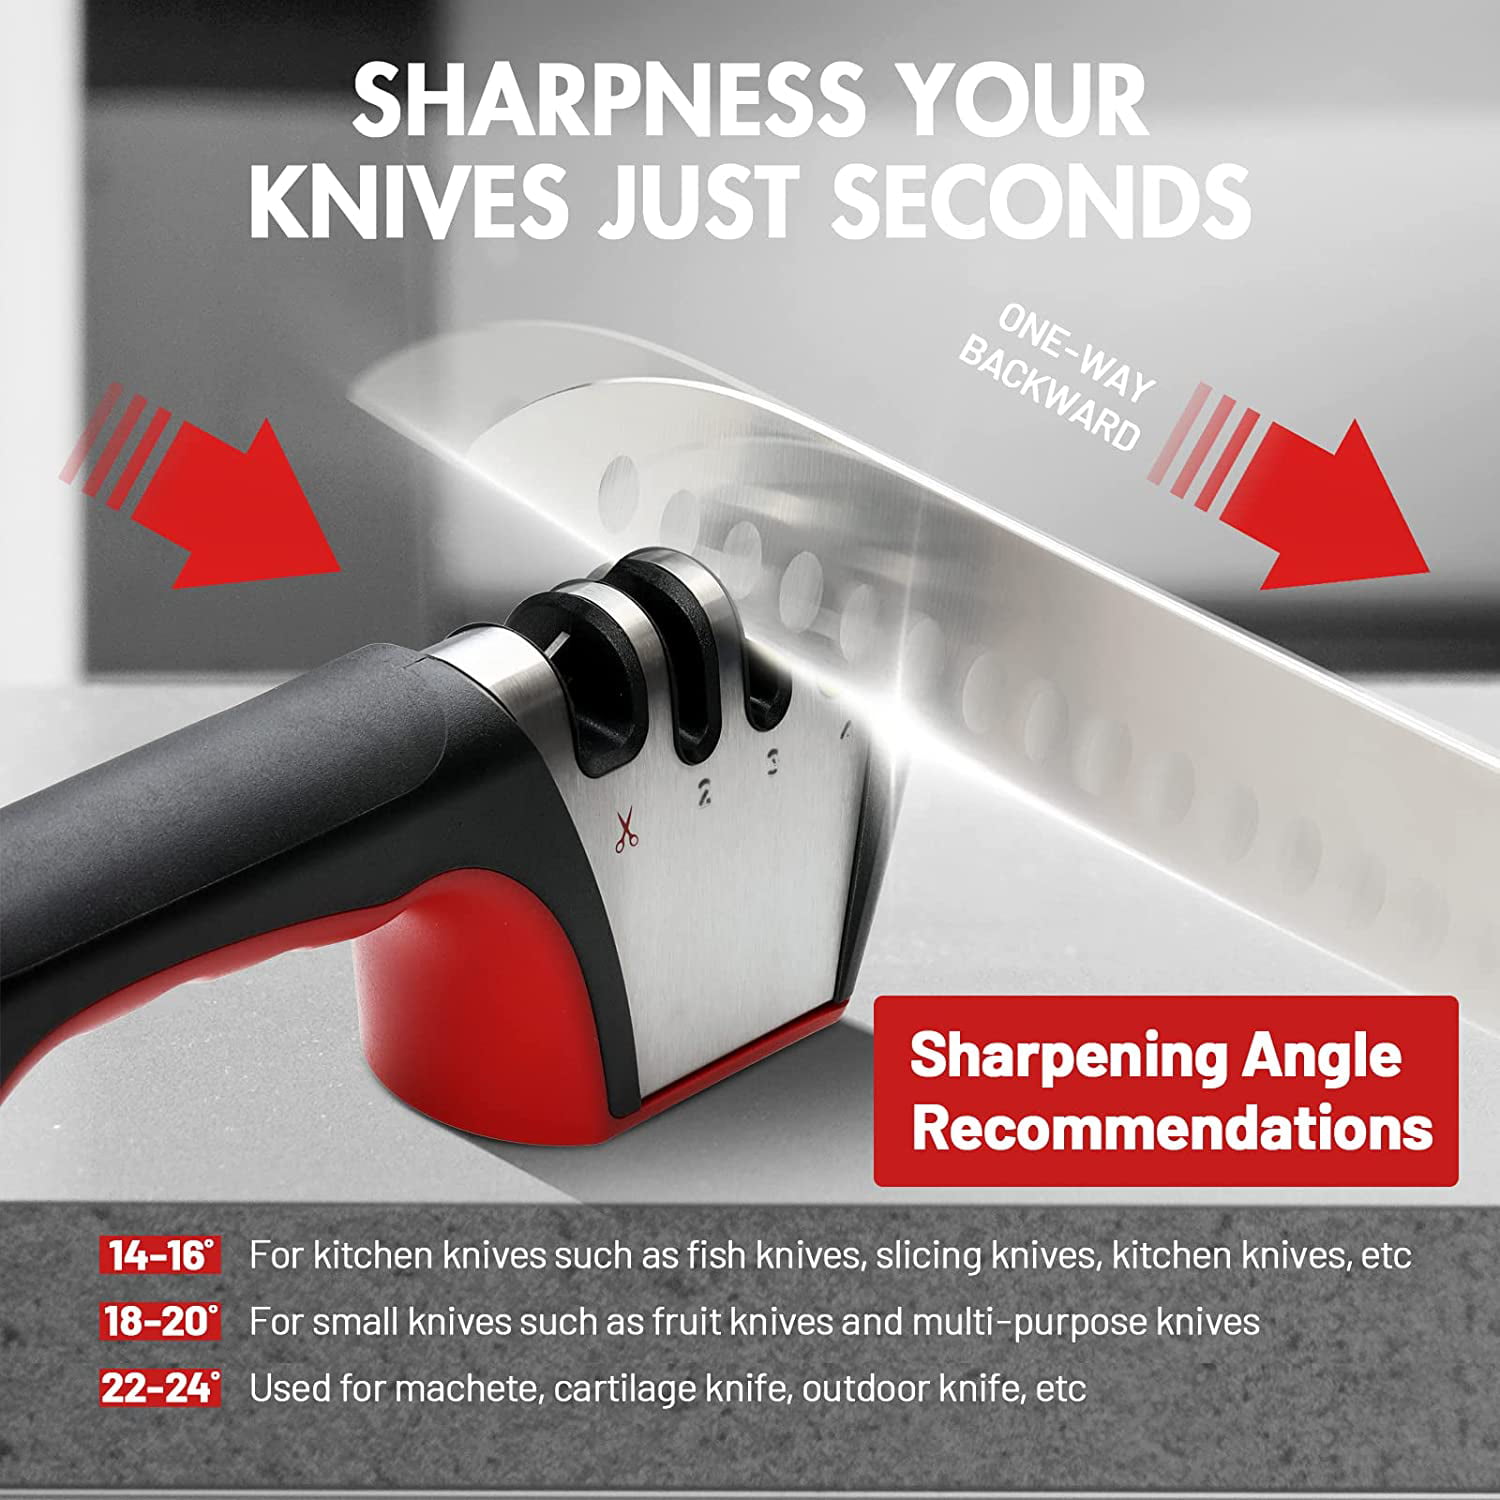 4-in-1knife sharpener, 3-Stage knife sharpeners for kitchen knives pocket tumbler  knife sharpener Heavy Duty Diamond Blade Really Works for Ceramic, Steel  Knives and Scissor sharpener 